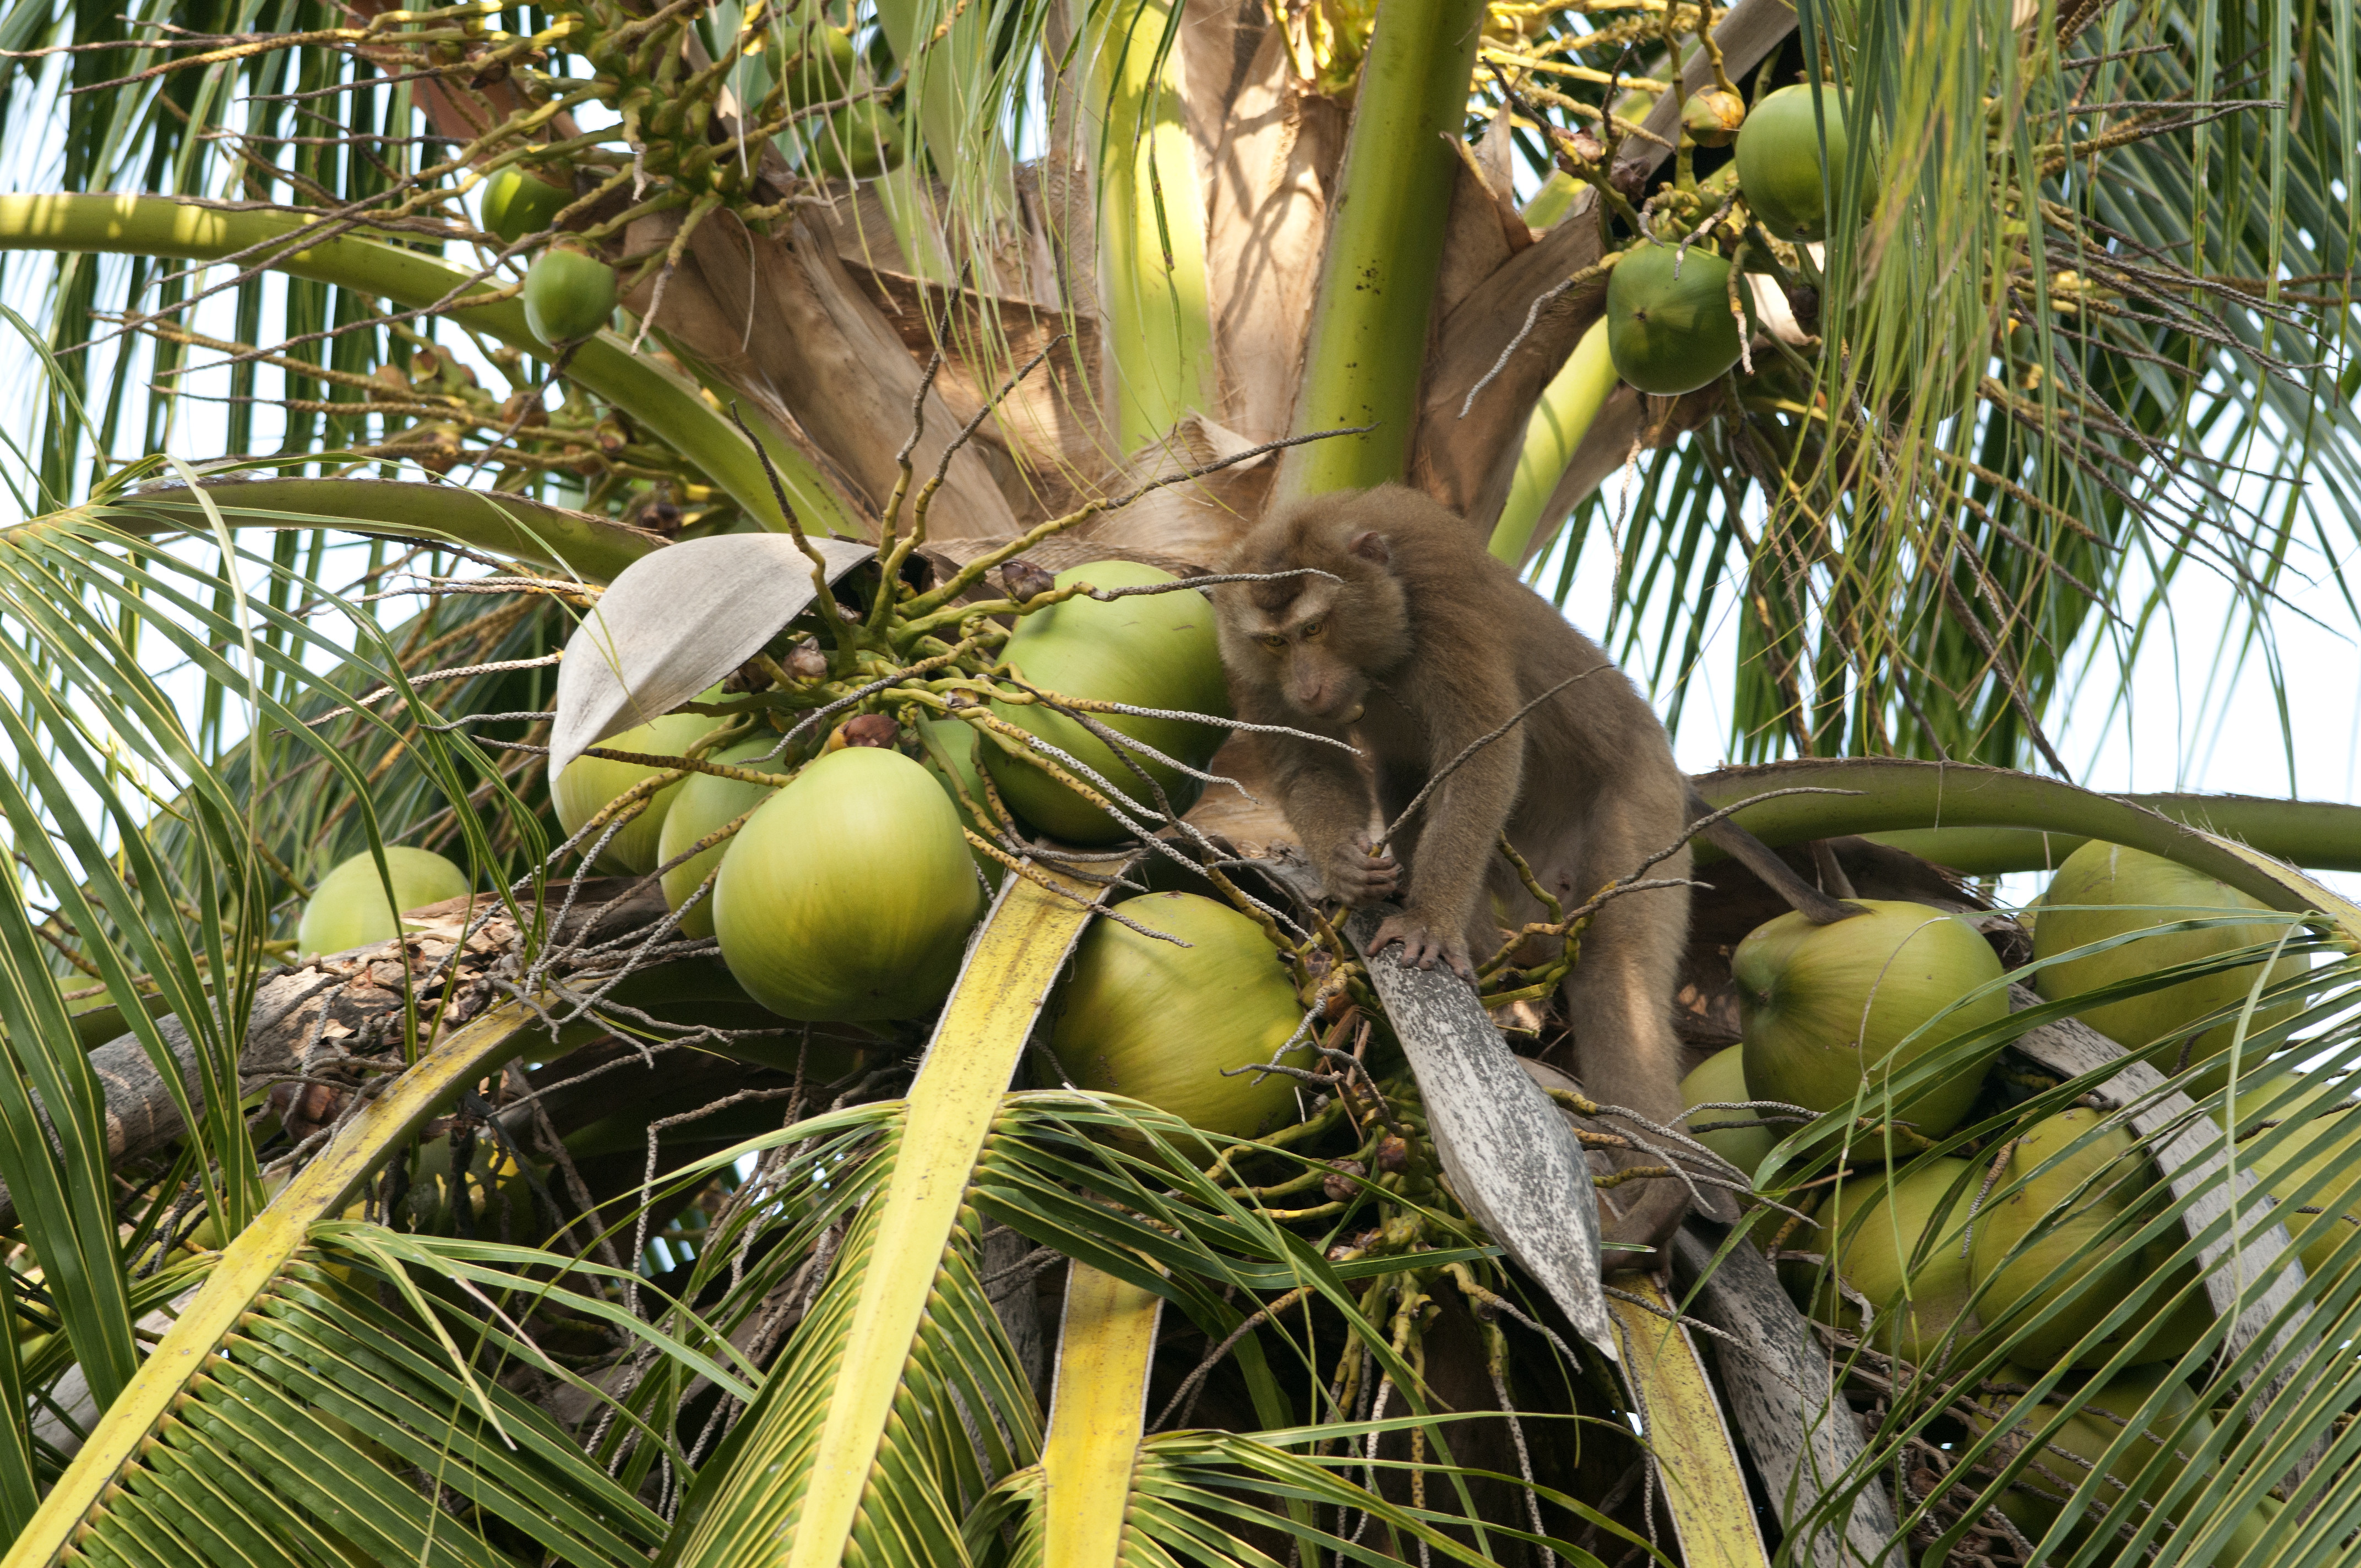 Címke jelöli ezentúl a thaiföldi kókuszdión, hogy majmok munkája nélkül szedték le a fáról